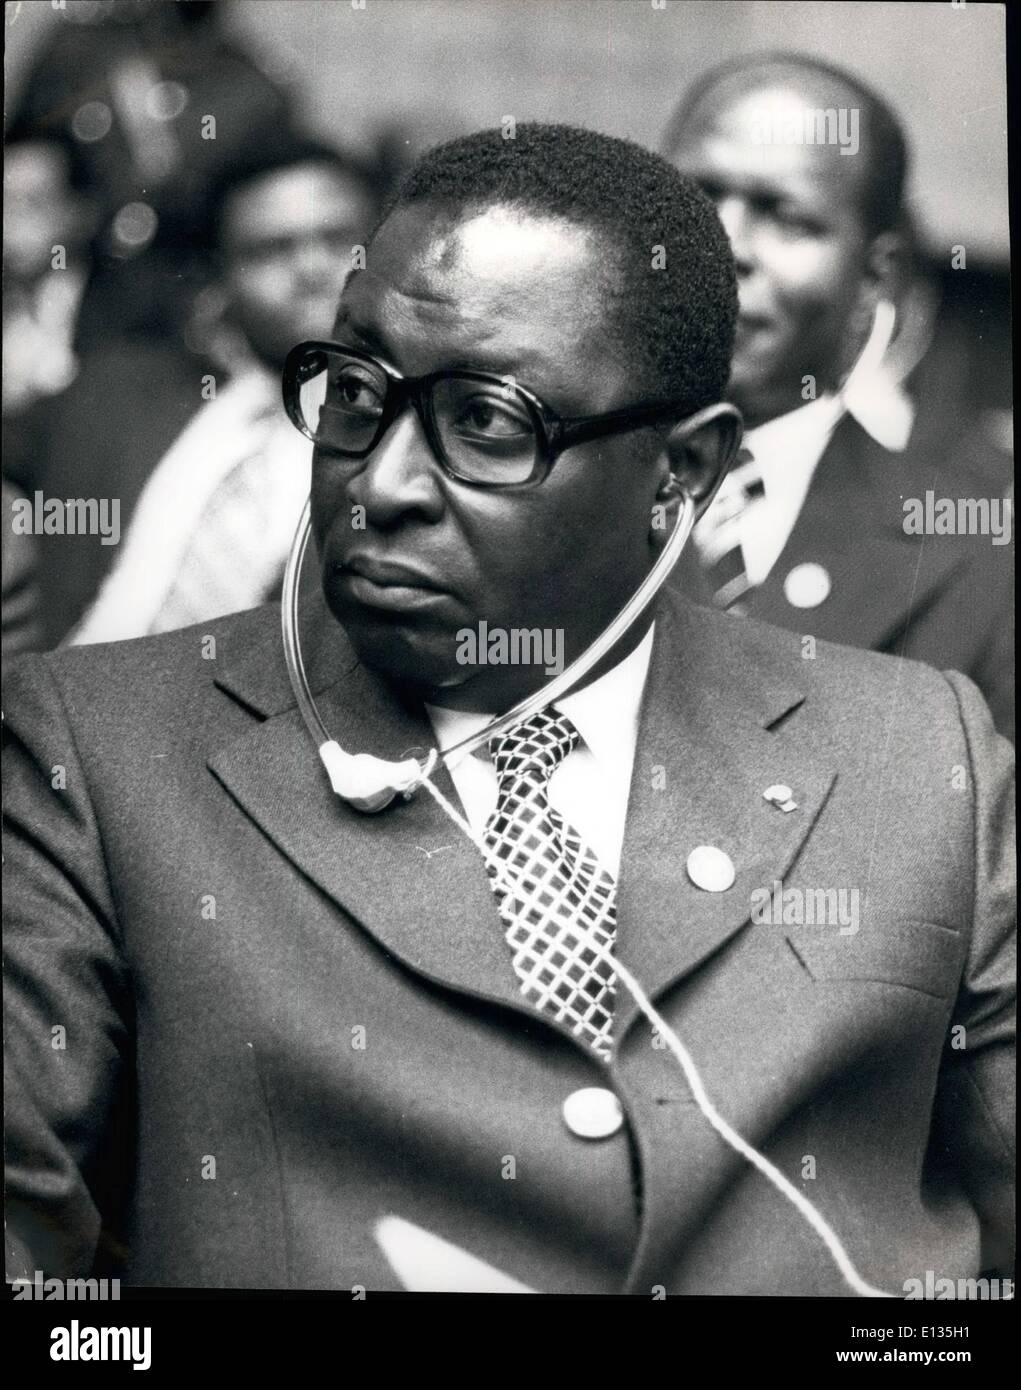 Febrero 28, 2012 - HUNLEDE: Houenou Ayi Hunlede, Ministro de Relaciones Exteriores. Nacida en 1925. El Ministro de Relaciones Exteriores de 1967. Foto de stock